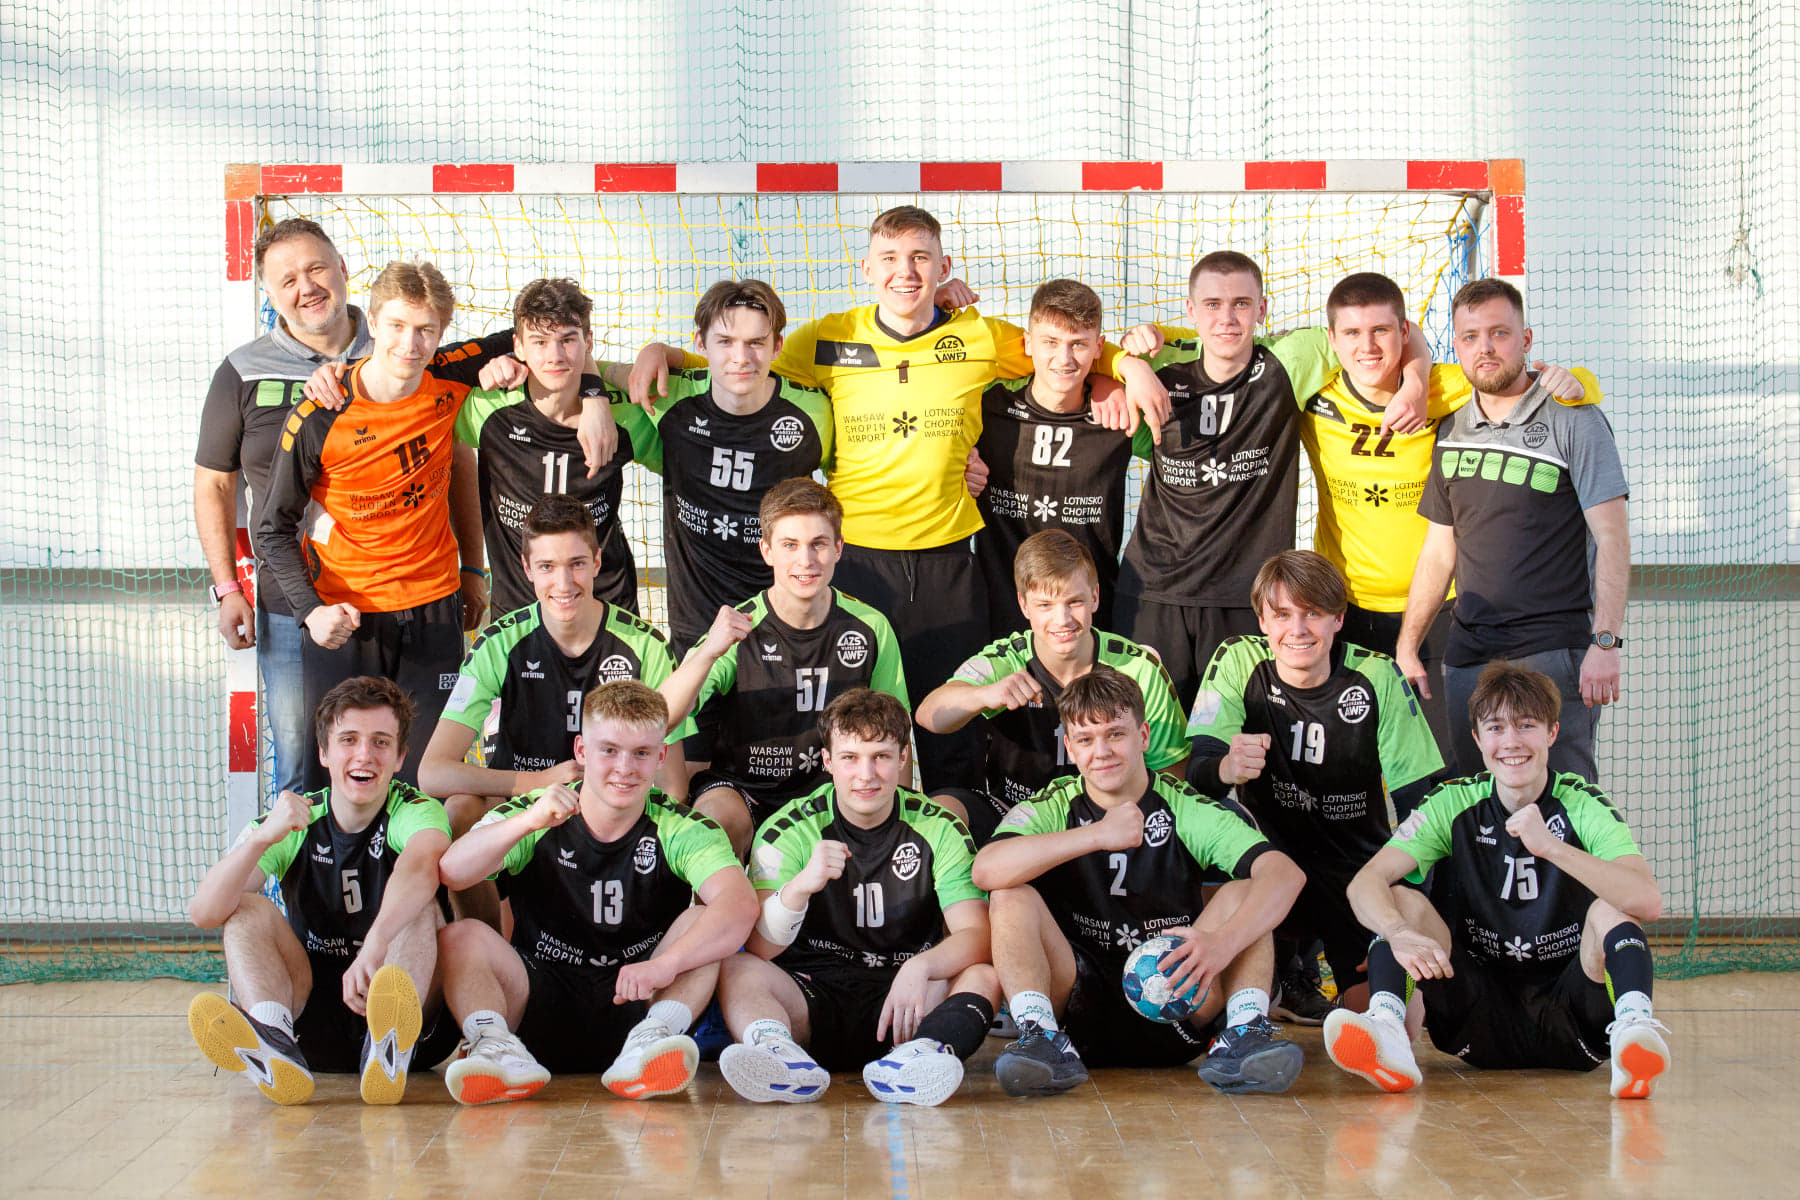 Mistrzostwa Polski Juniorów Młodszych Sezon 2020-2021 – WYNIKI 1-4 Finału